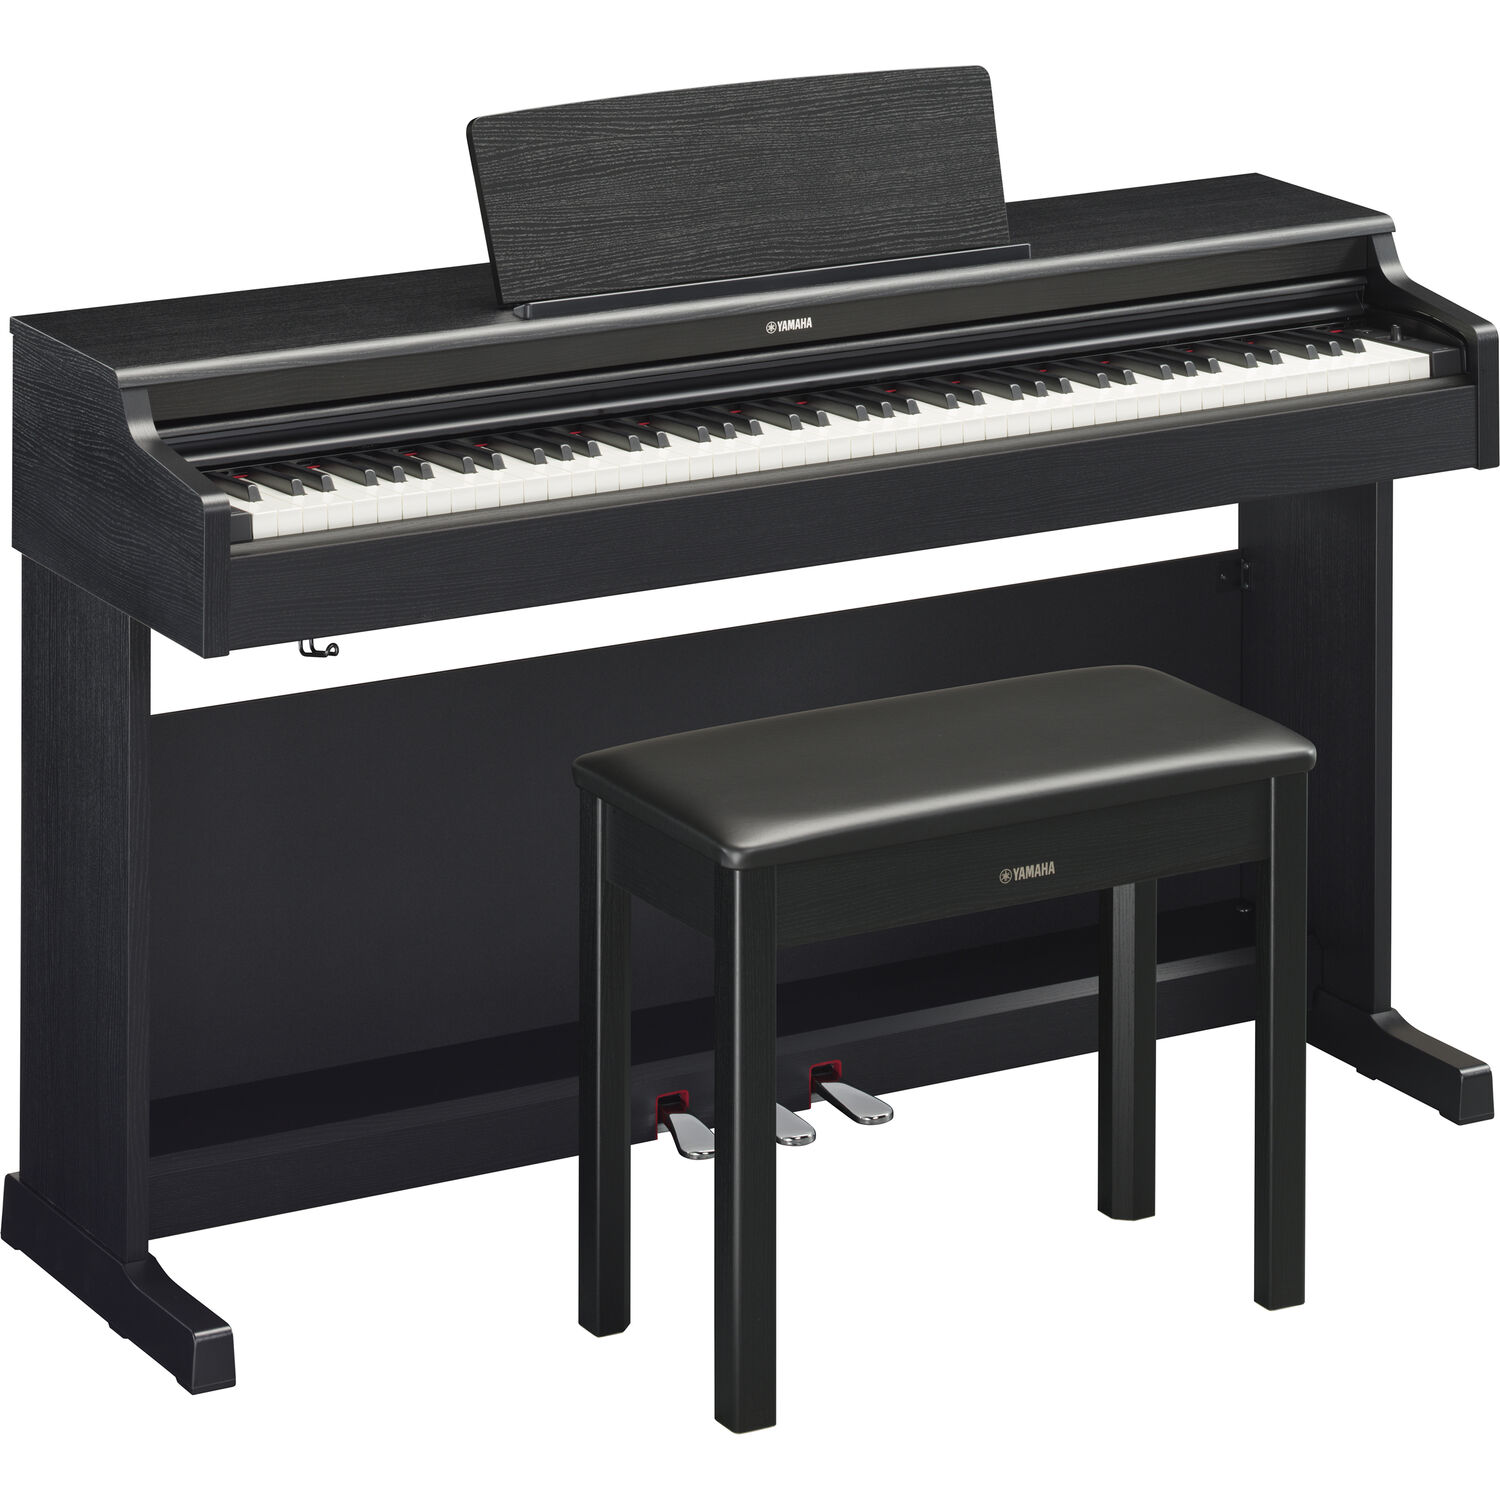 Piano Digital de Consola Yamaha Arius Ydp 165 de 88 Teclas con Banqueta Nogal Negro